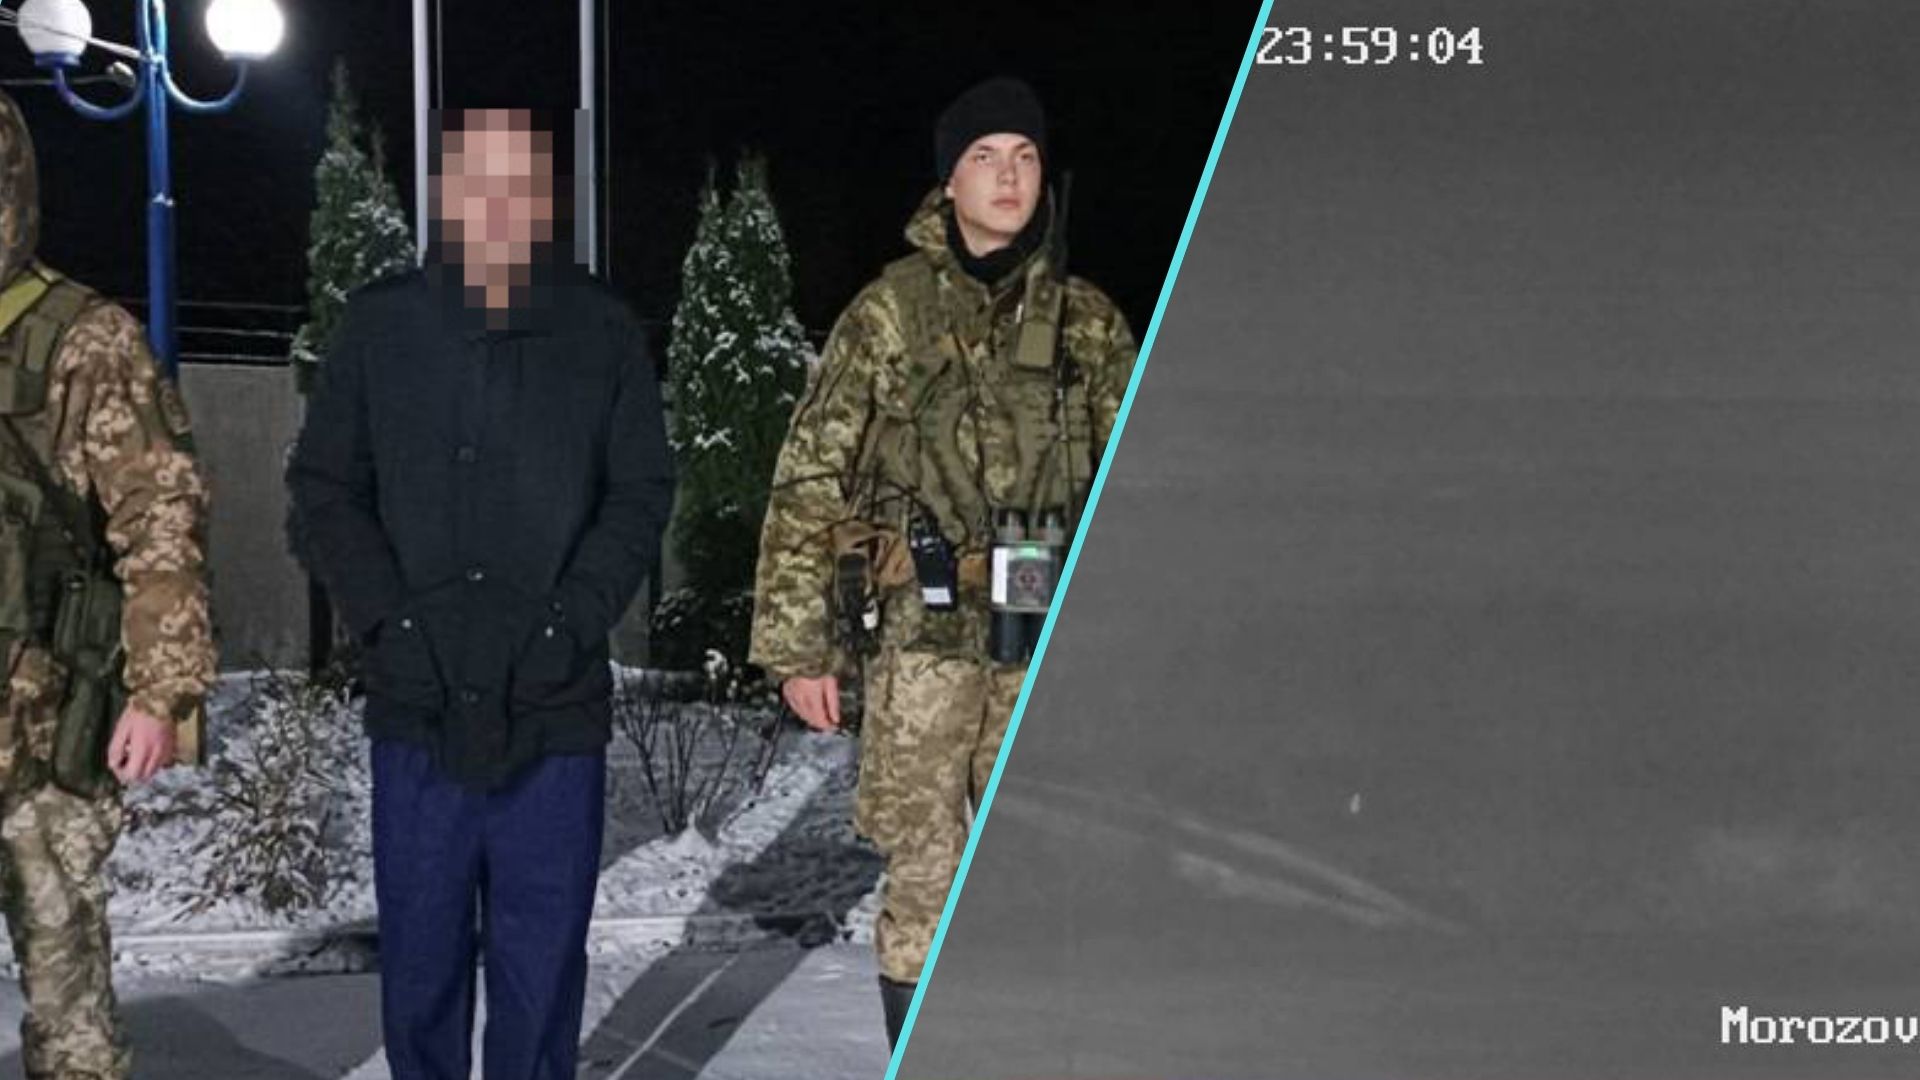 Прикордонники Волинського загону затримали 40-річного чоловіка, який намагався незаконно перетнути українсько-польський кордон.